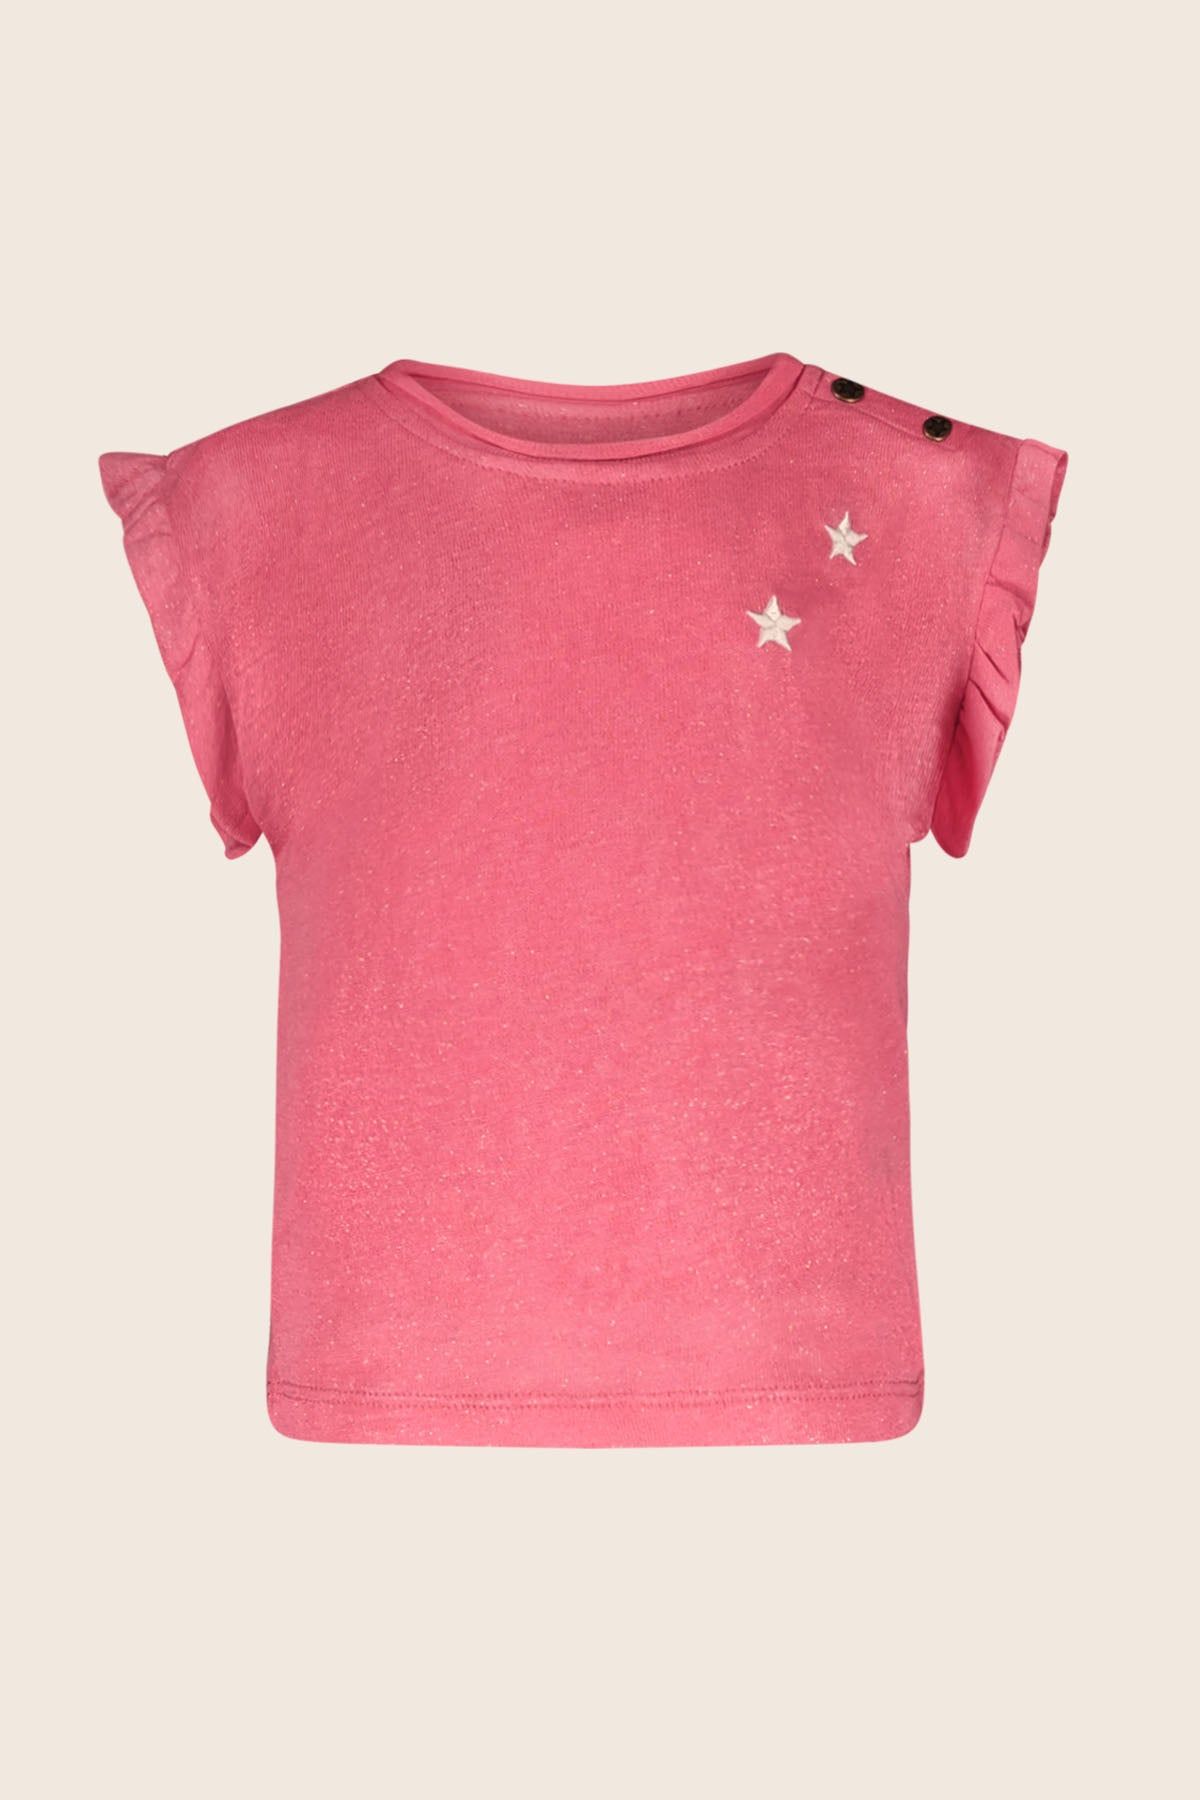 T-Shirt Top GEMMA pink